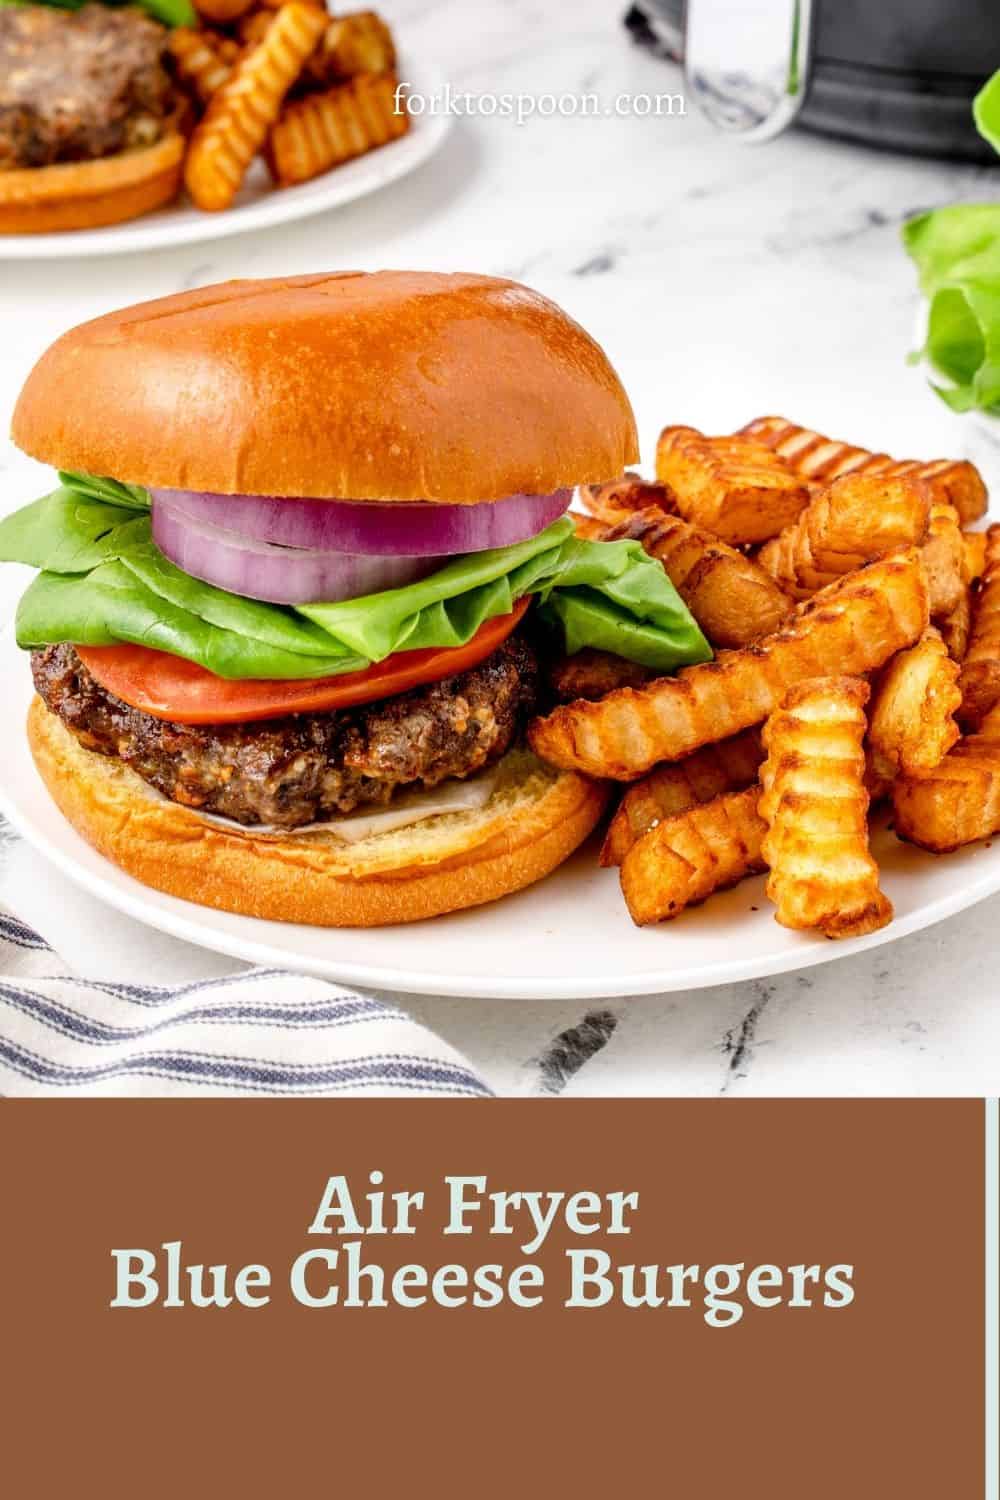 Air Fryer Blue Cheese Burgers